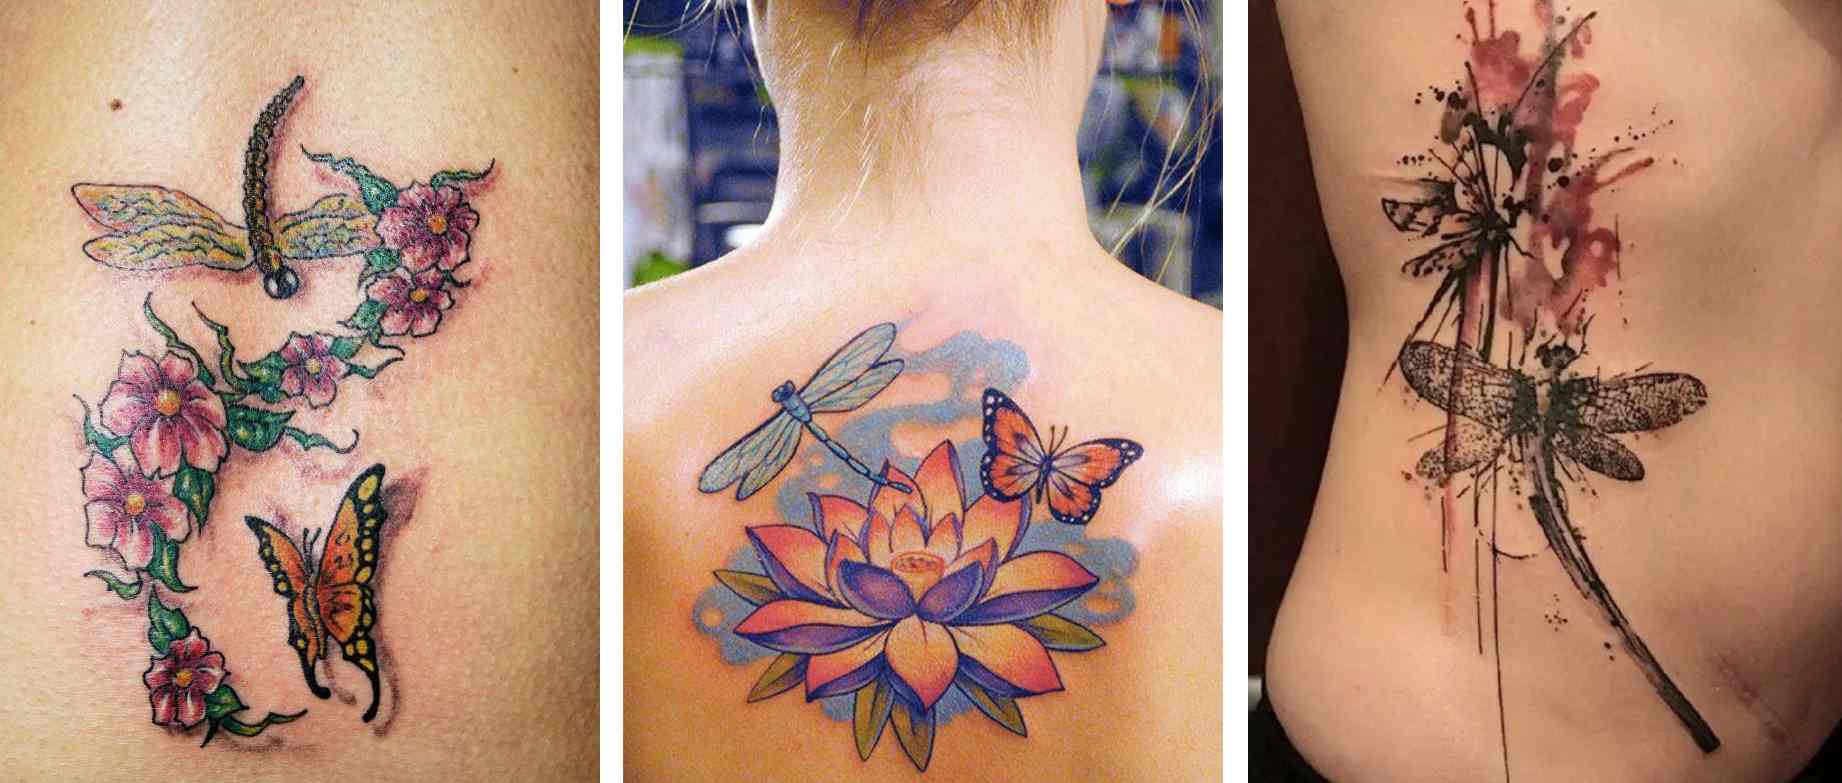 Tattoo Tatuaggio Forza Interiore farfalla libellula